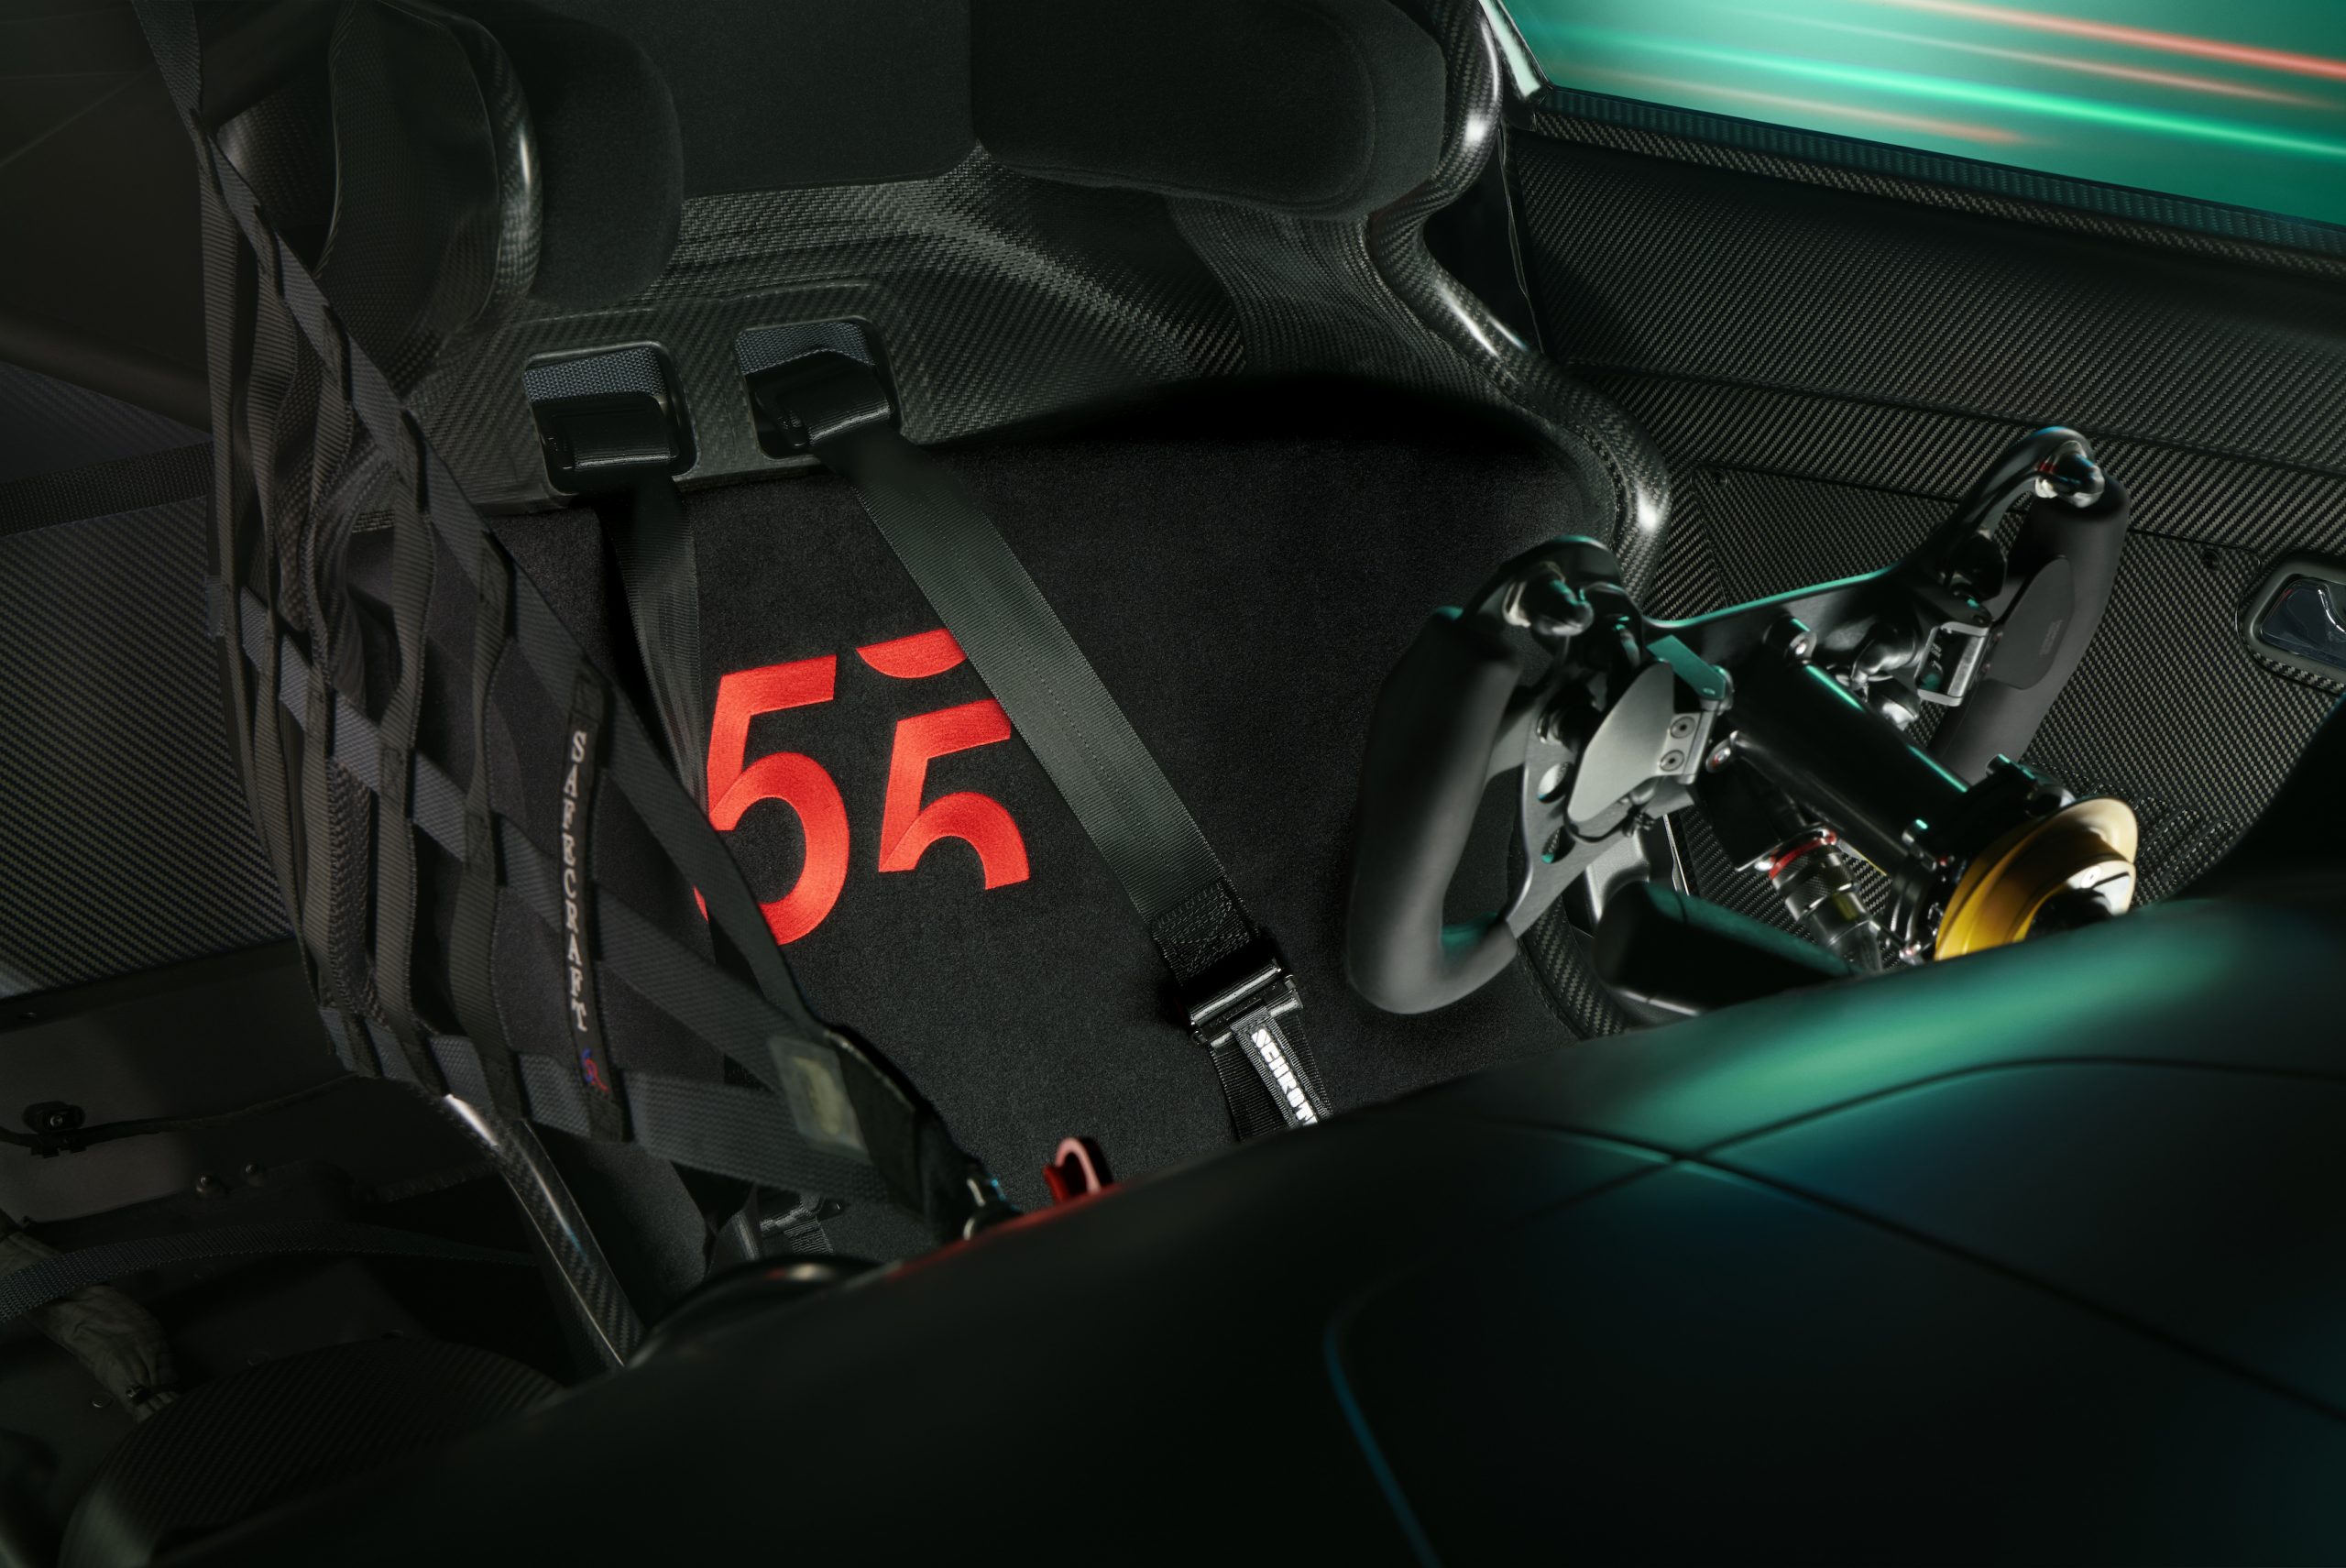 El interior del Mercedes AMG GT3